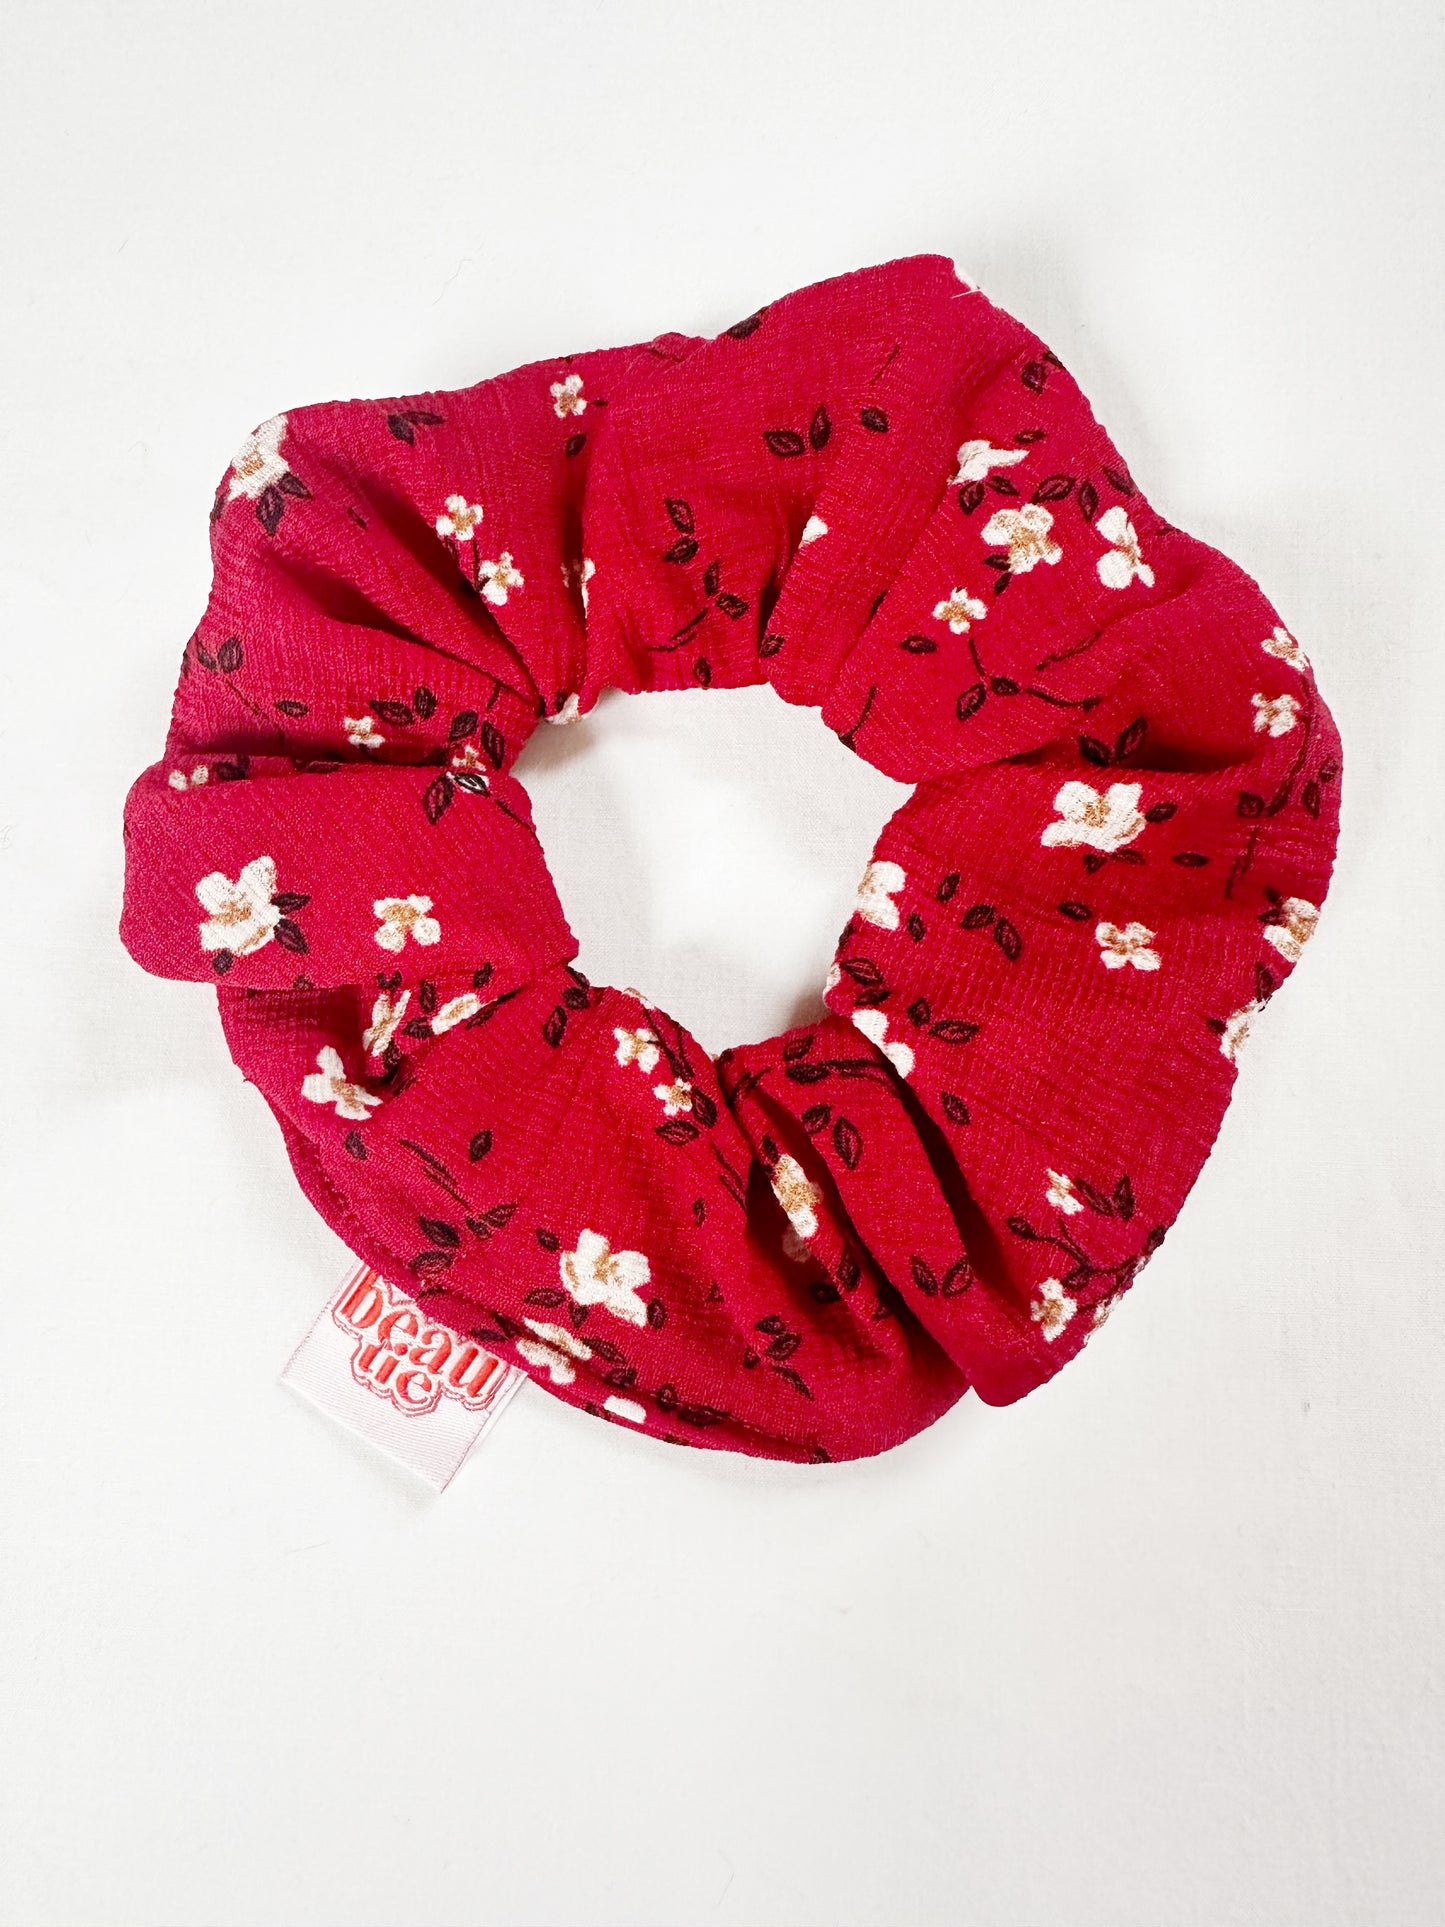 OG scrunchie in red floral